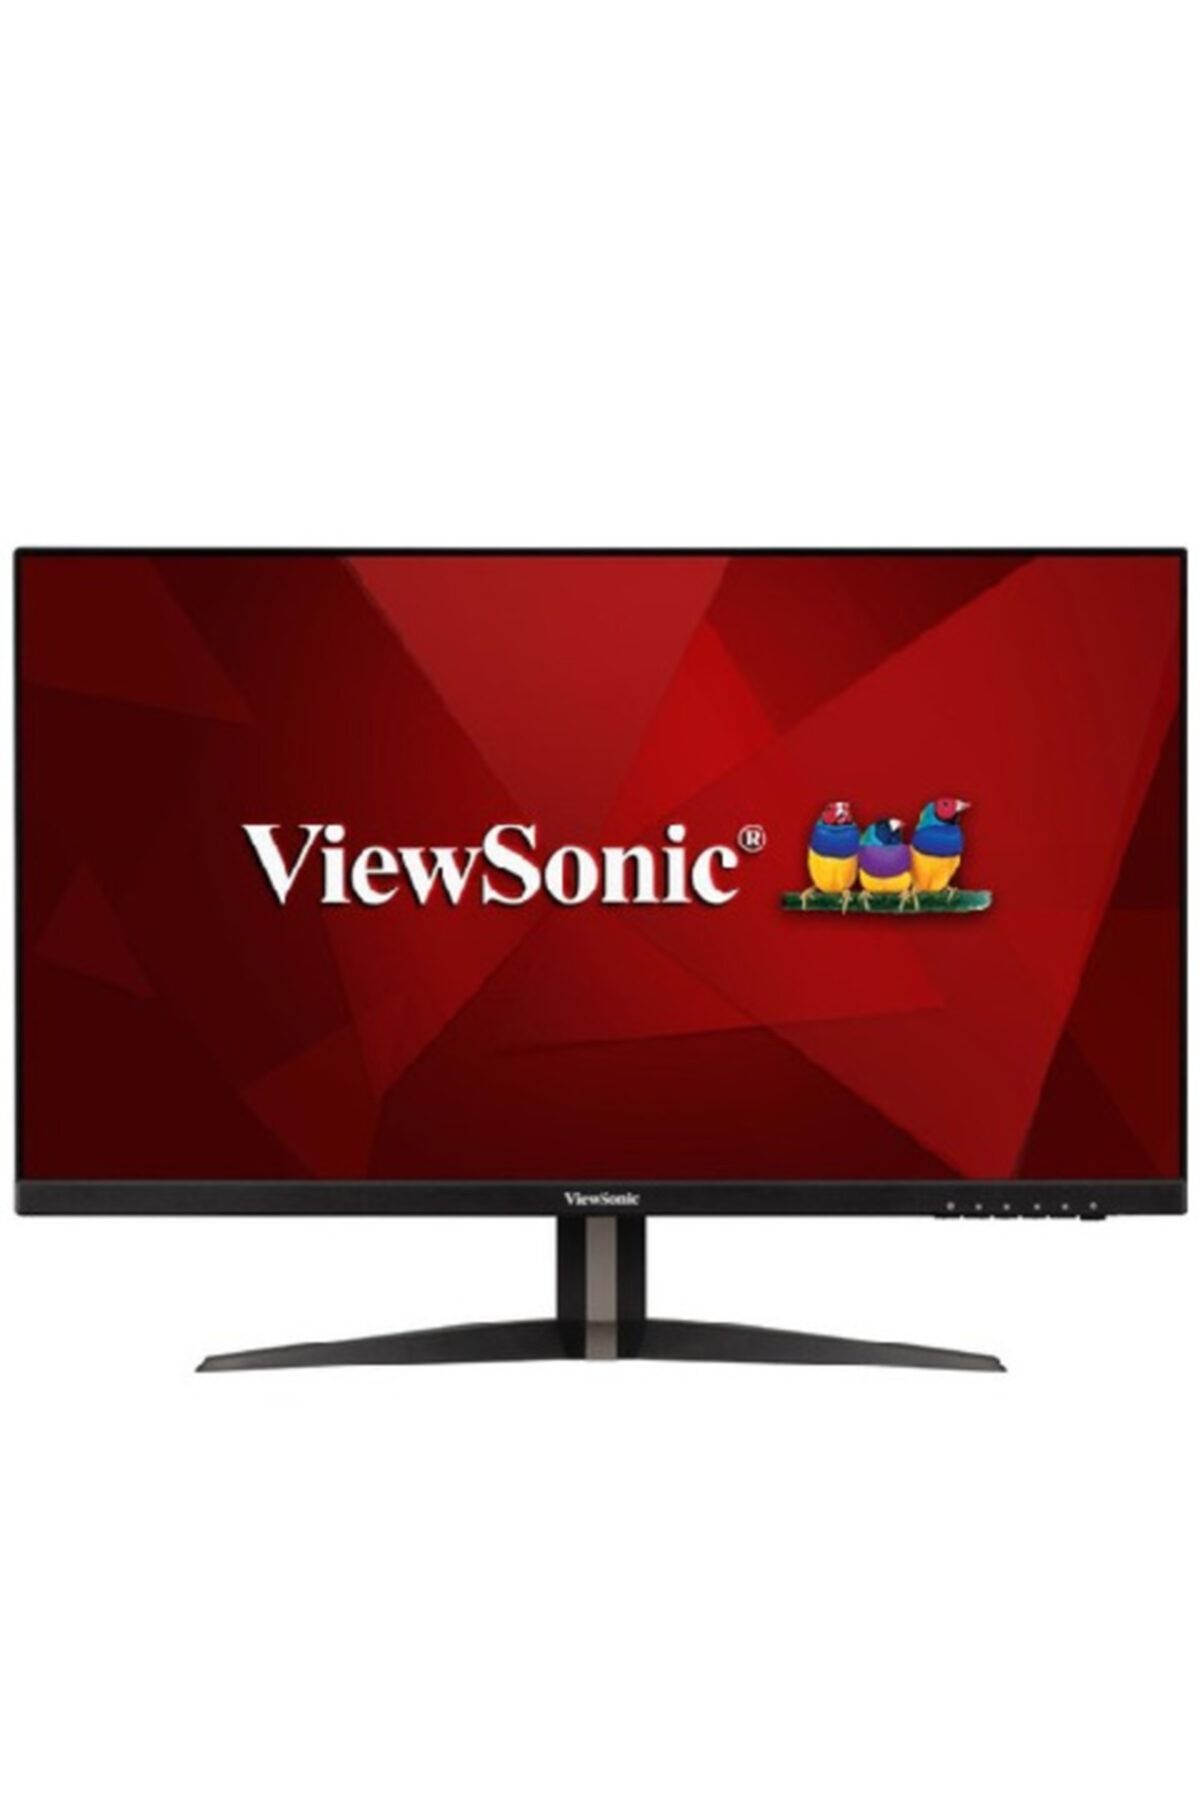 ViewSonic Vx2705-2kp-mhd 27ınc 144hz 1ms (hdmı+display) Freesync 2k Ips Monitör